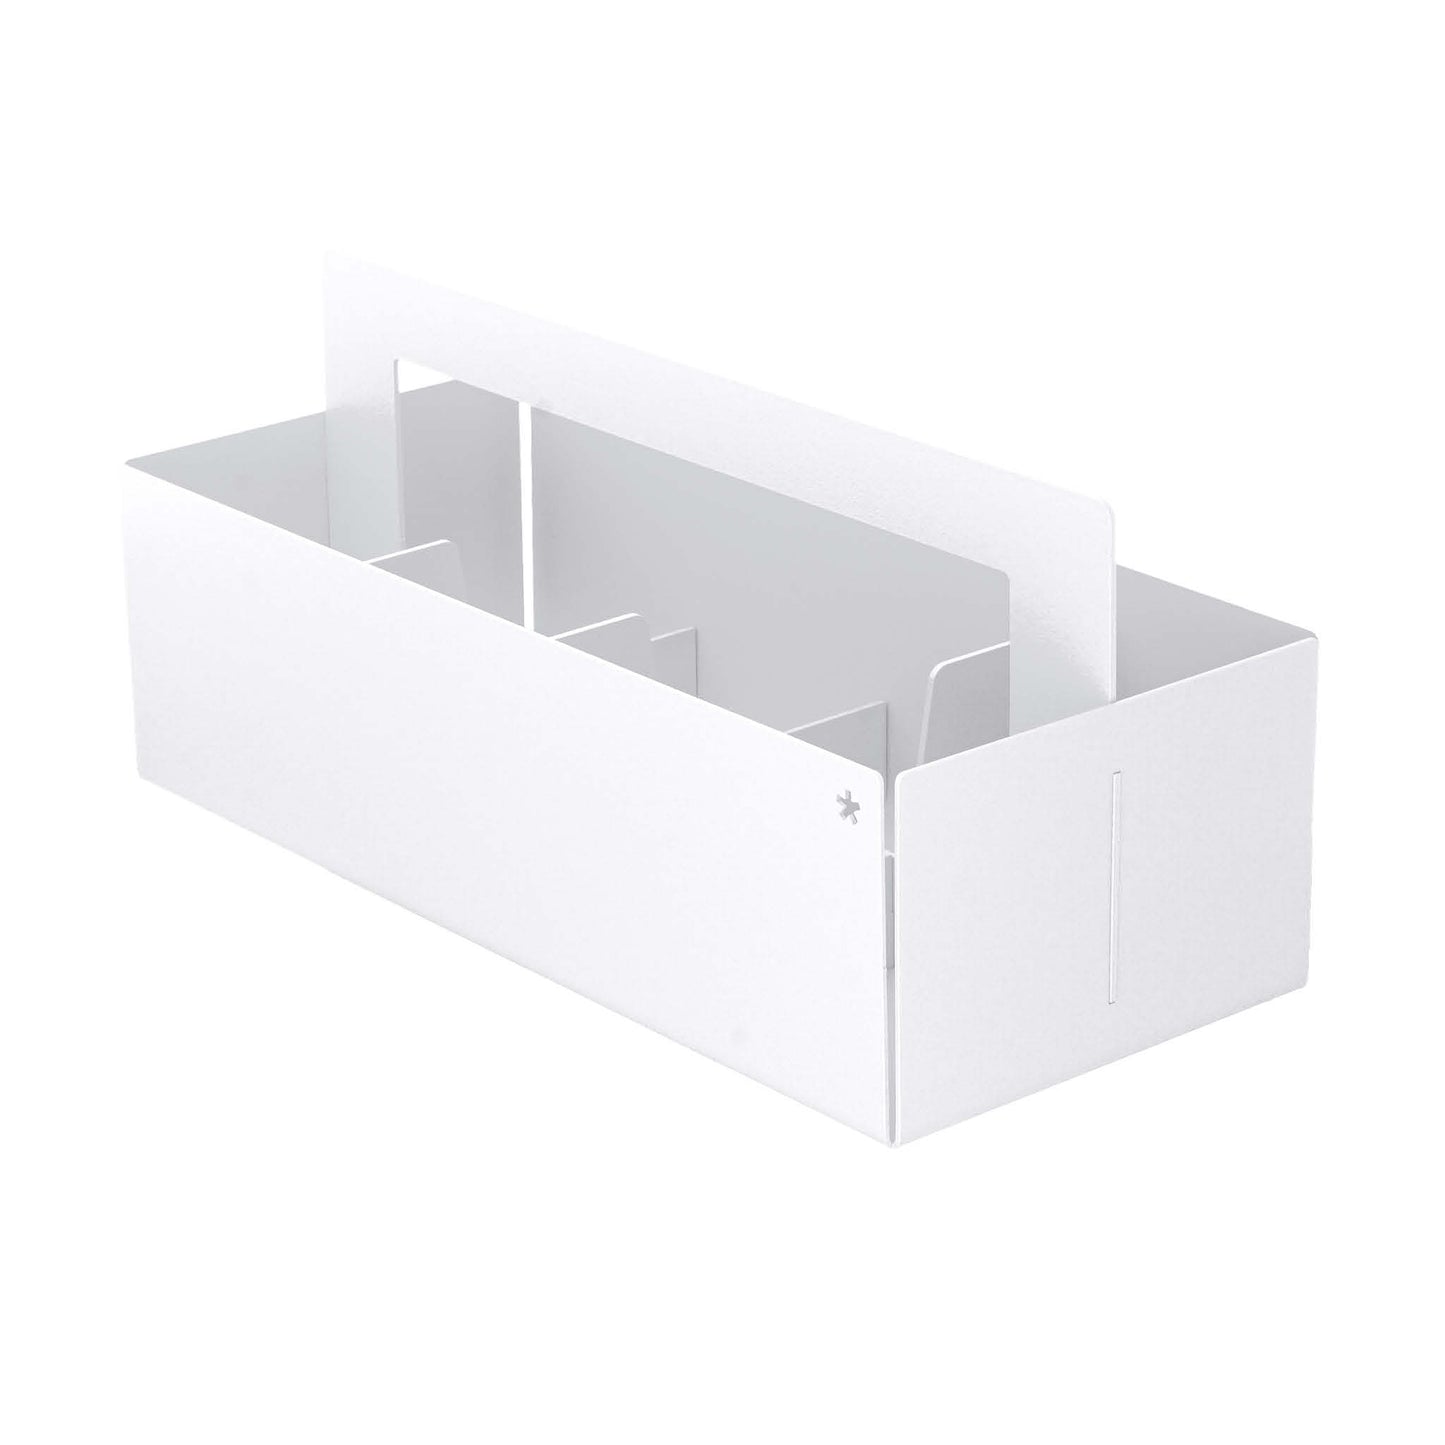 Toolbox aus Stahl in weiß, das praktische Organisationswerkzeug für den Schreibtisch im Home Office.